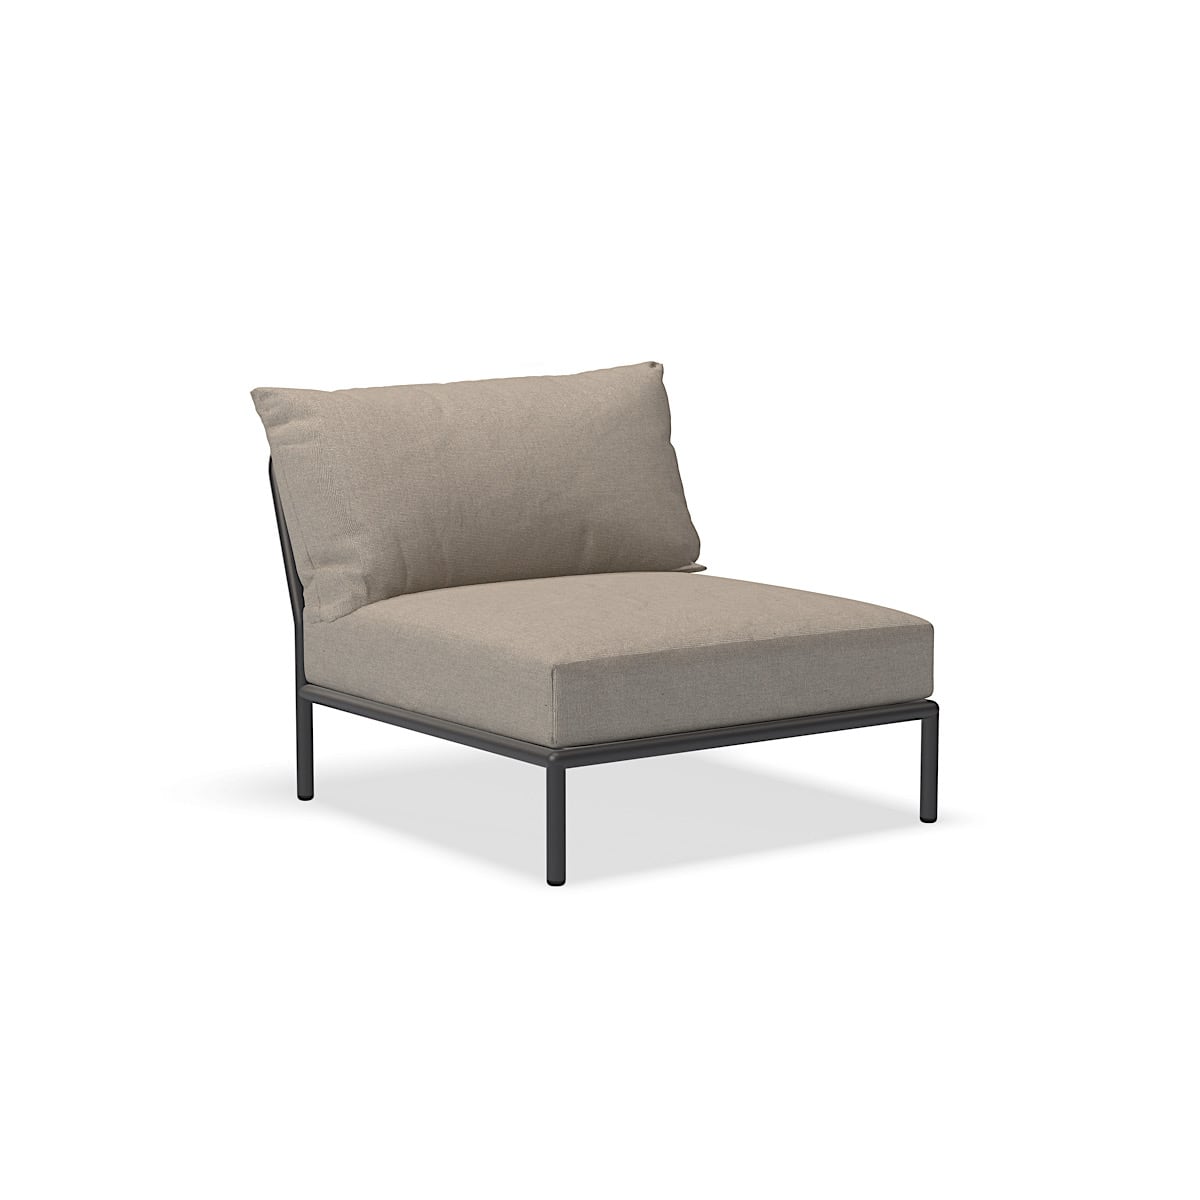 Καρέκλα - 22205-9251 - Καρέκλα, τέφρα (HERITAGE), σκούρα γκρι δομή